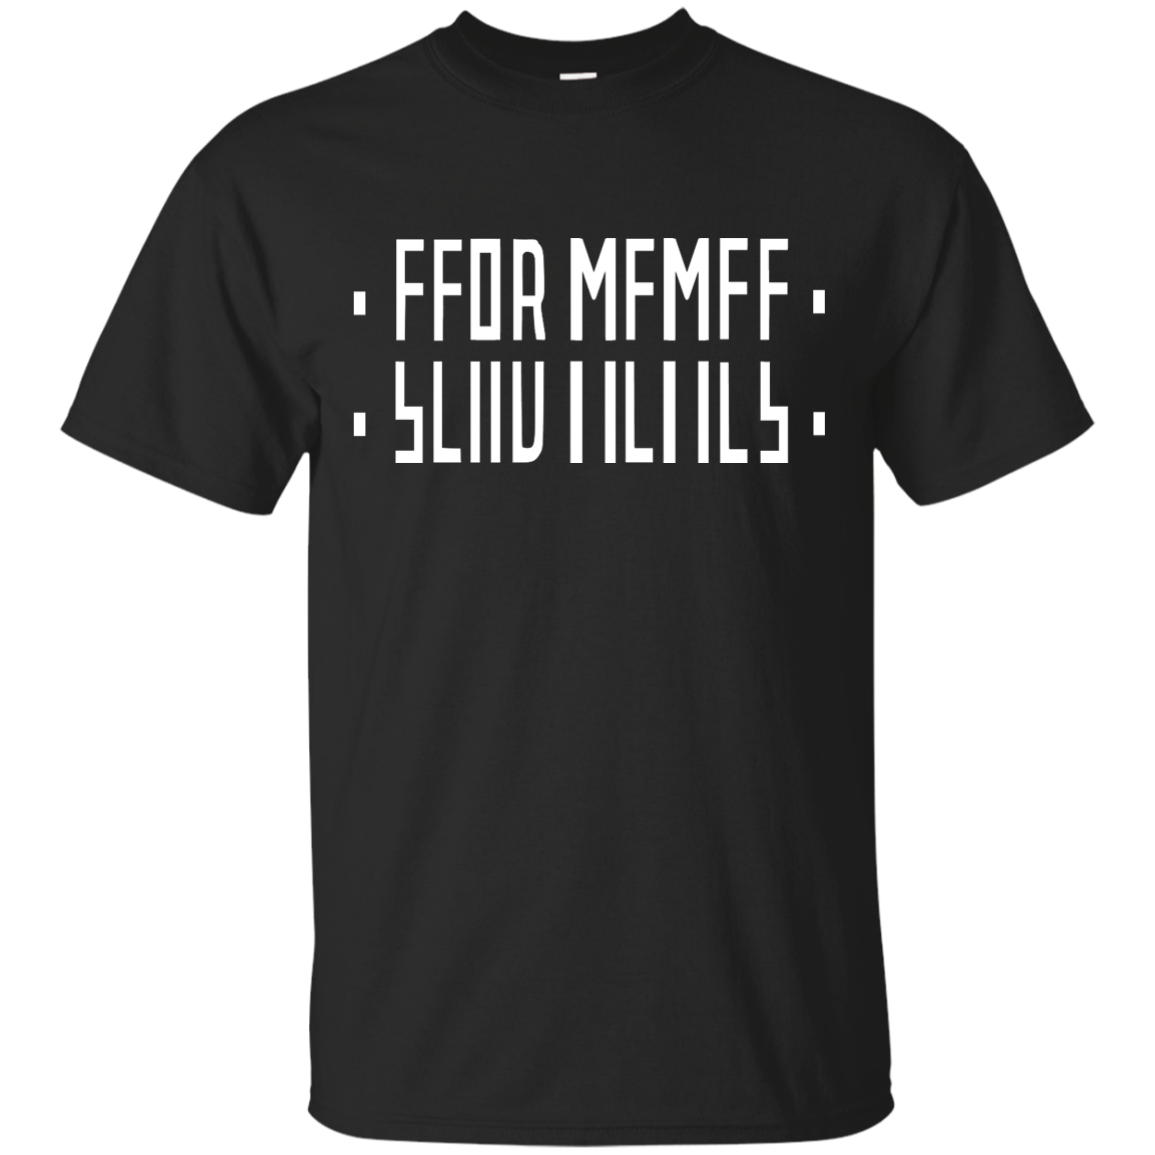 Hidden message Send Memes shirt, sweatshirt